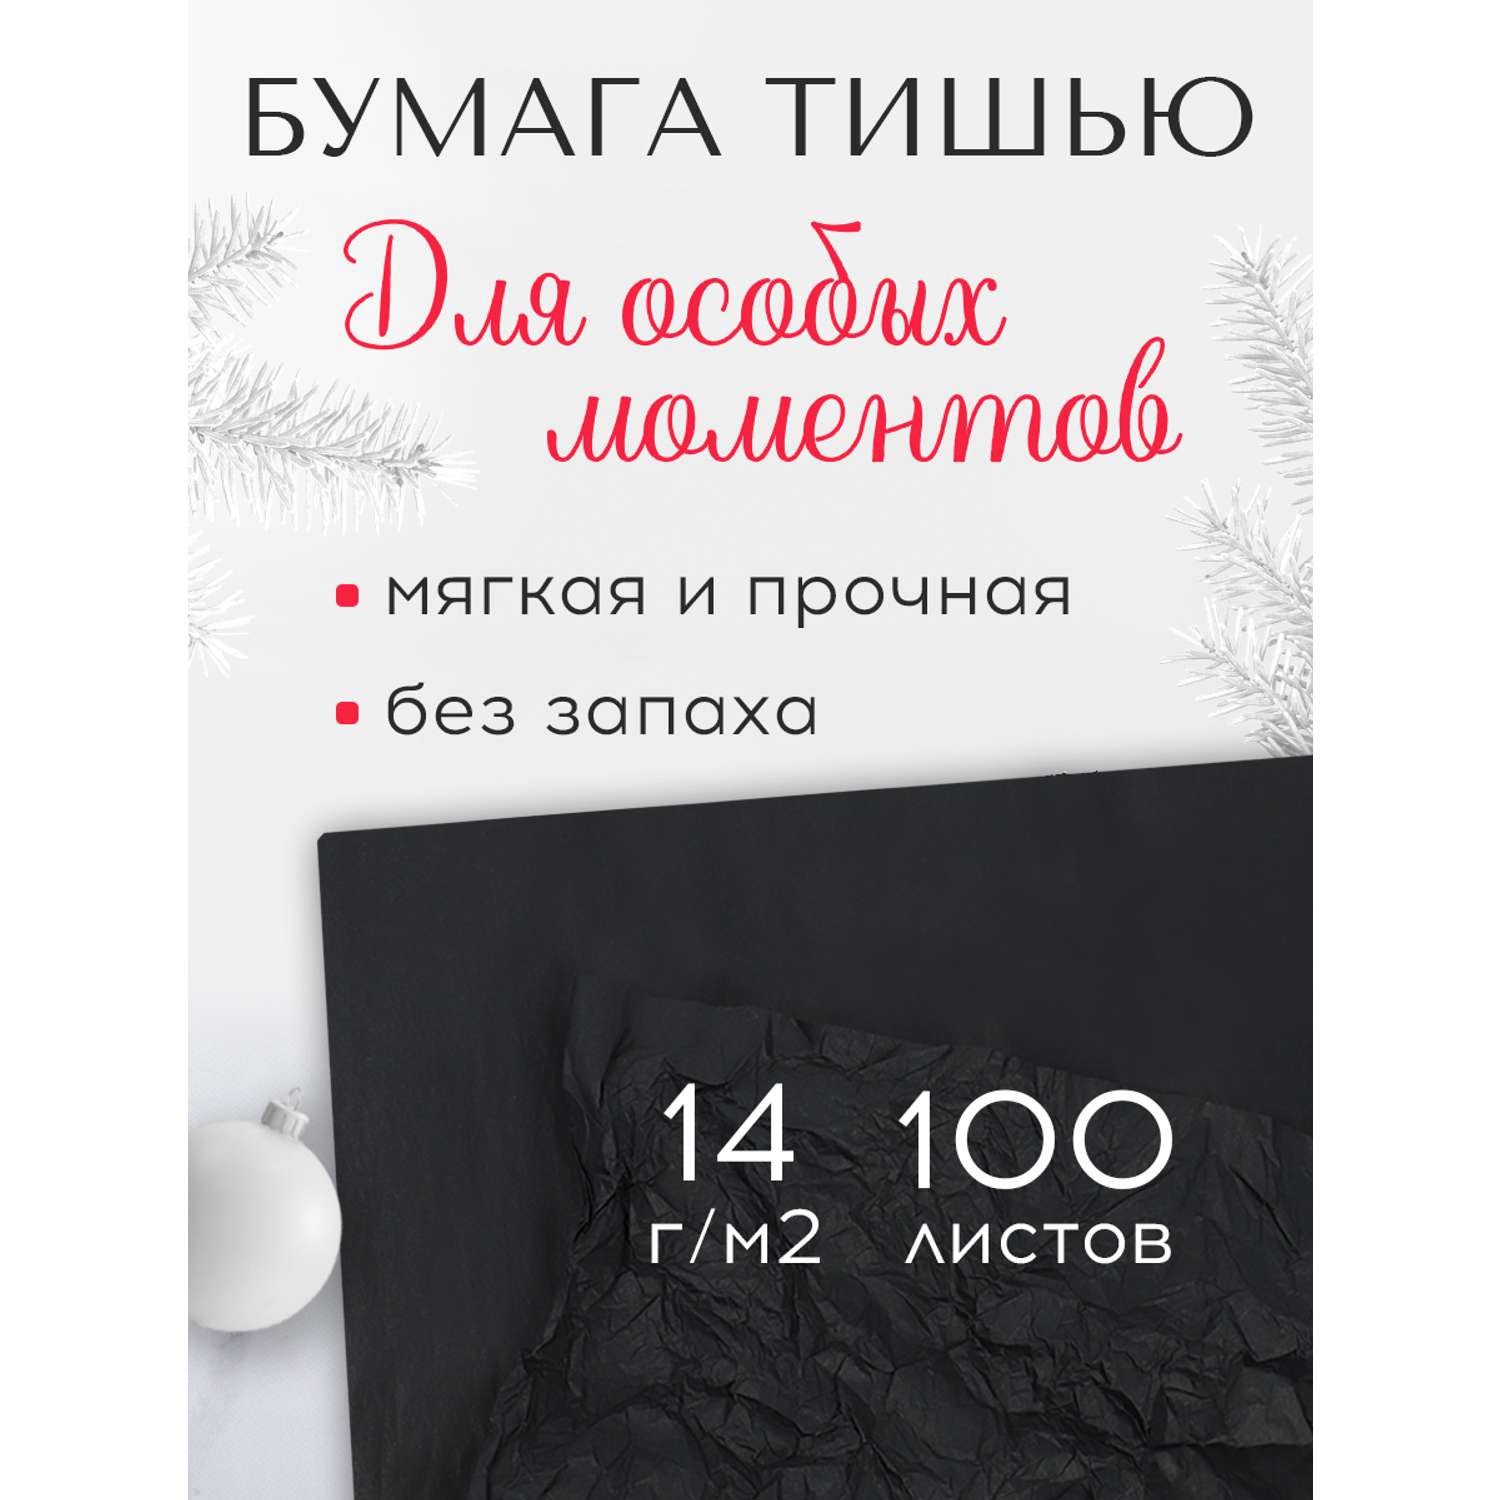 Бумага тишью Conflate черная 100 листов - фото 1